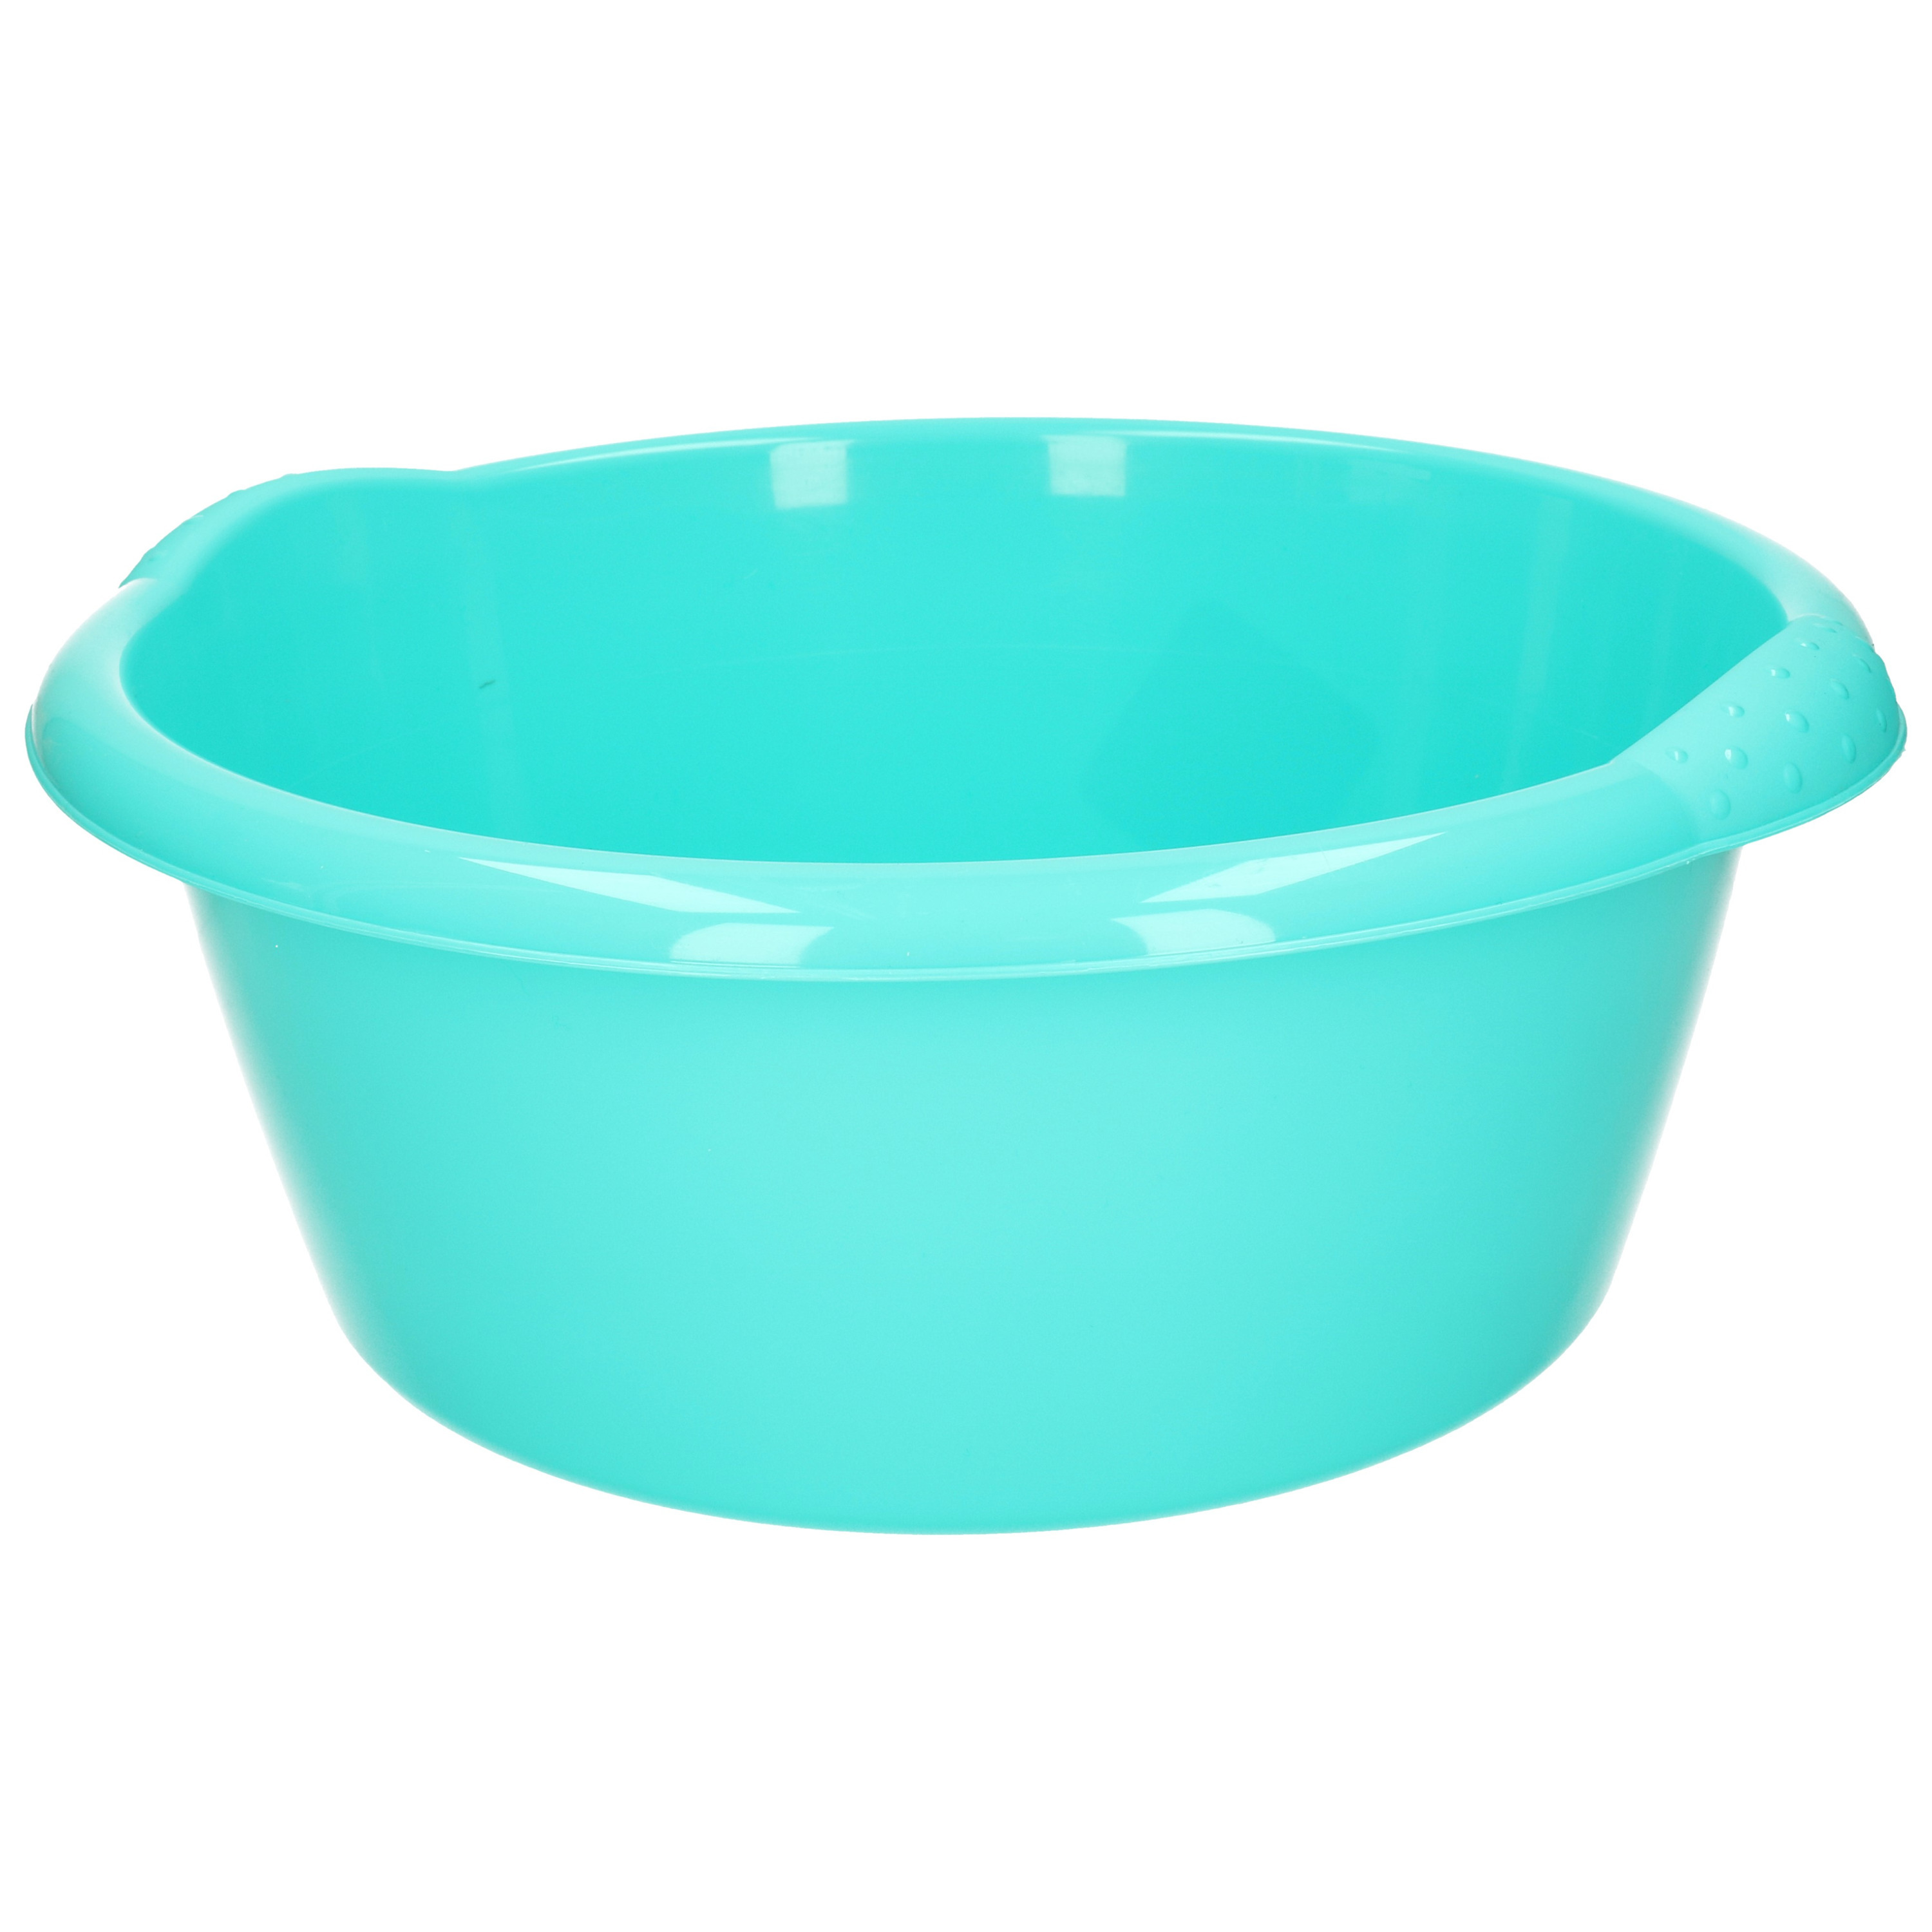 Ronde afwasteil/afwasbak turquoise blauw 15 liter 42 x 17 cm -